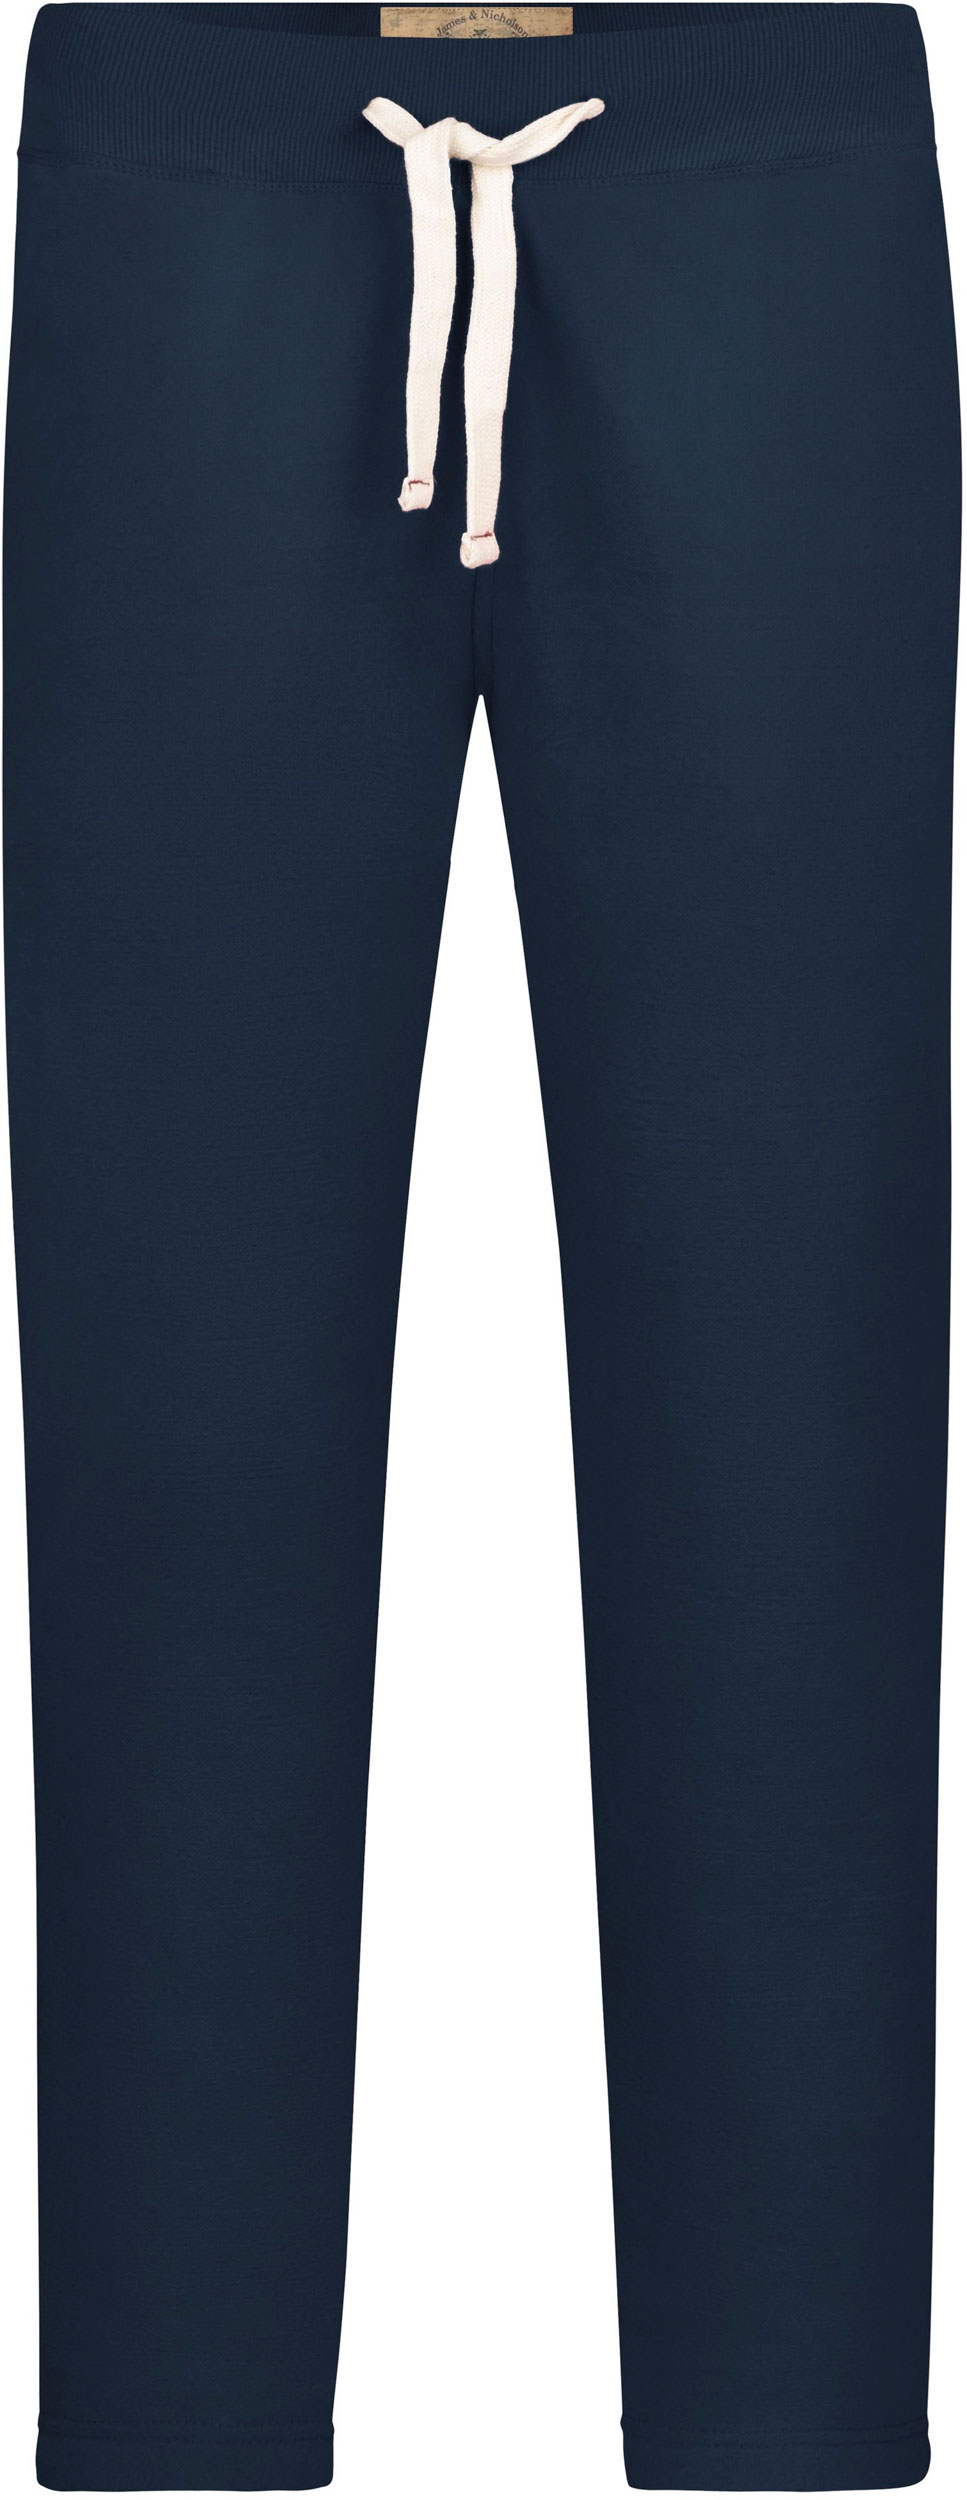 Pánské tepláky James & Nicholson Vintage Pants|S